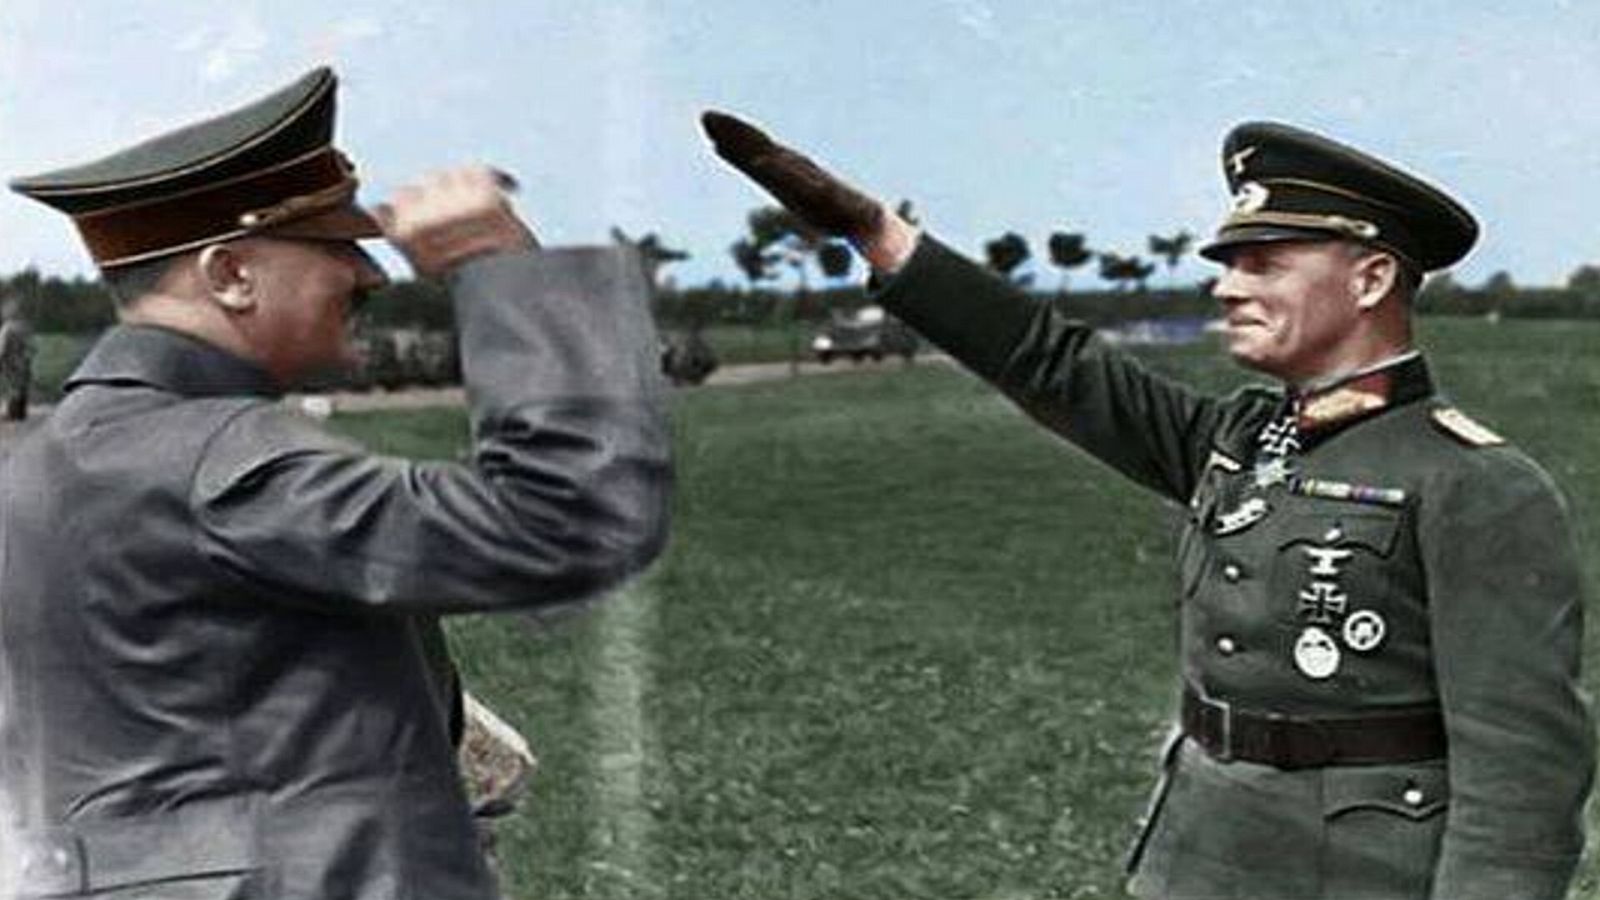 Erwin Rommel saluda a Adolf Hitler durante el tiempo en que se llevaban bien. El mariscal de campo descubrió pronto lo que llamó 'locura' en el Führer